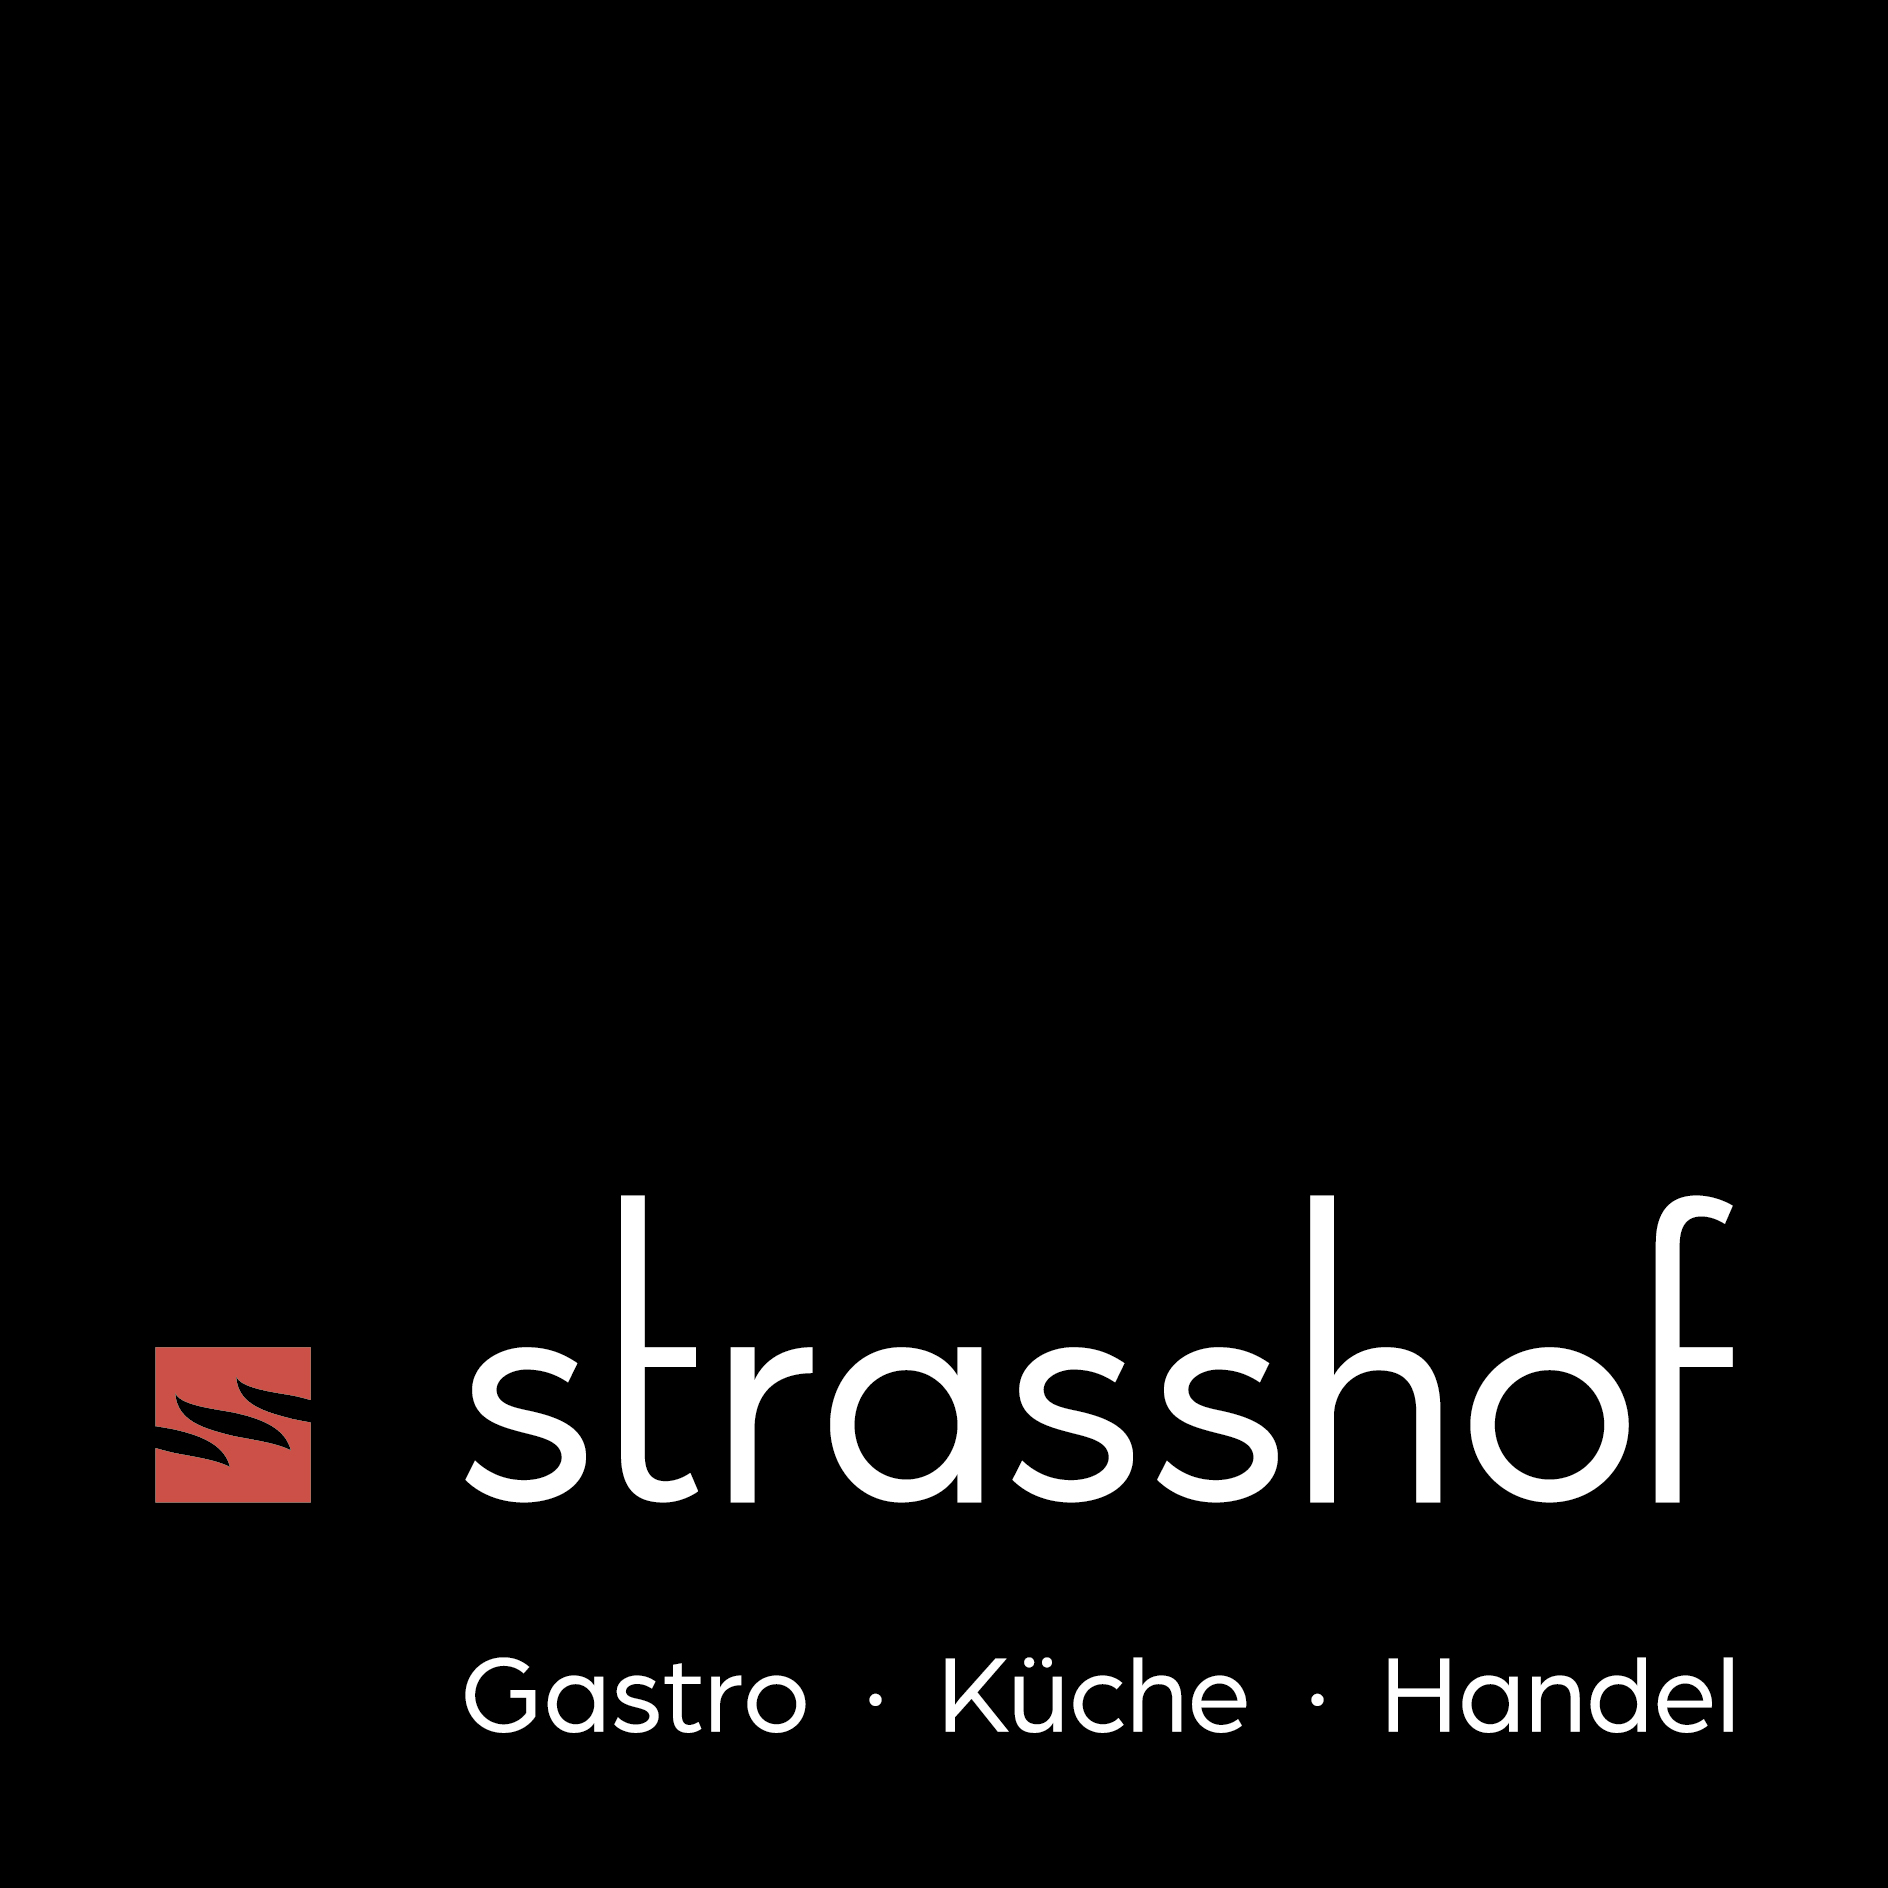 Strasshof GmbH